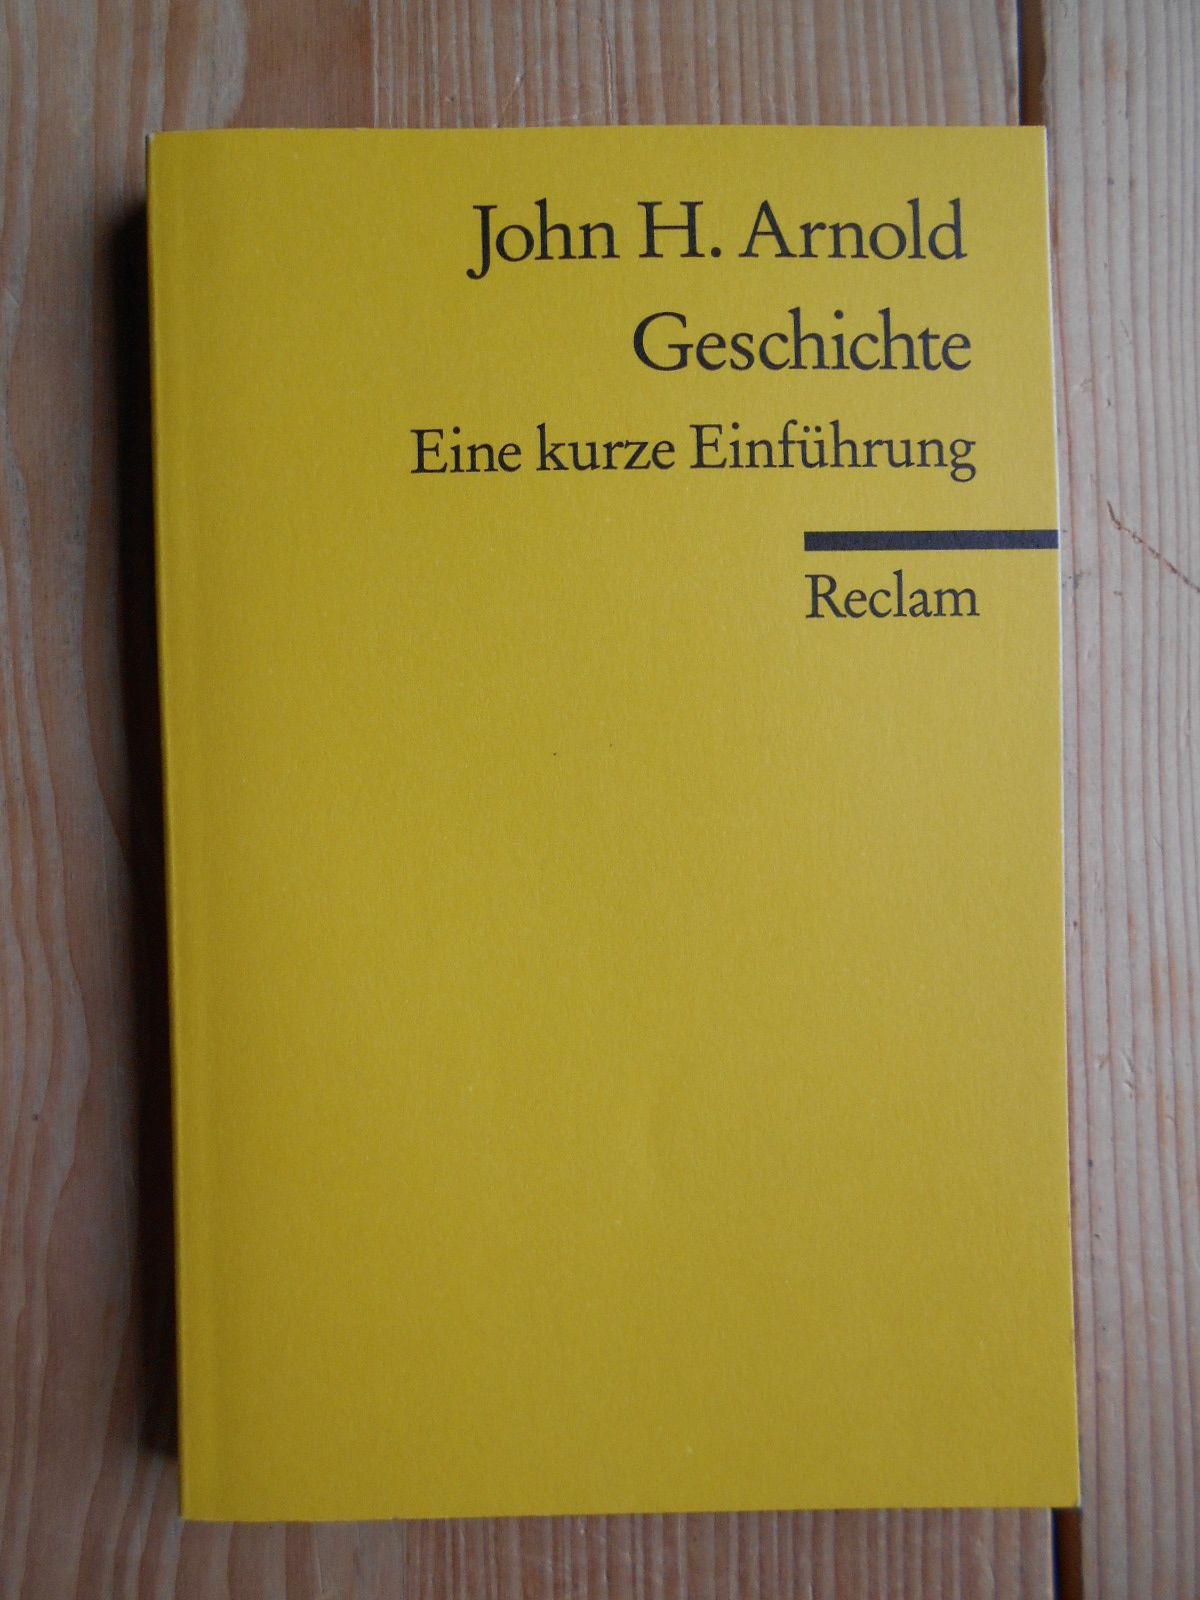 Geschichte : eine kurze Einführung. John H. Arnold. Aus dem Engl. übers. von Karin Schuler / Reclams Universal-Bibliothek ; 17026 - Arnold, John